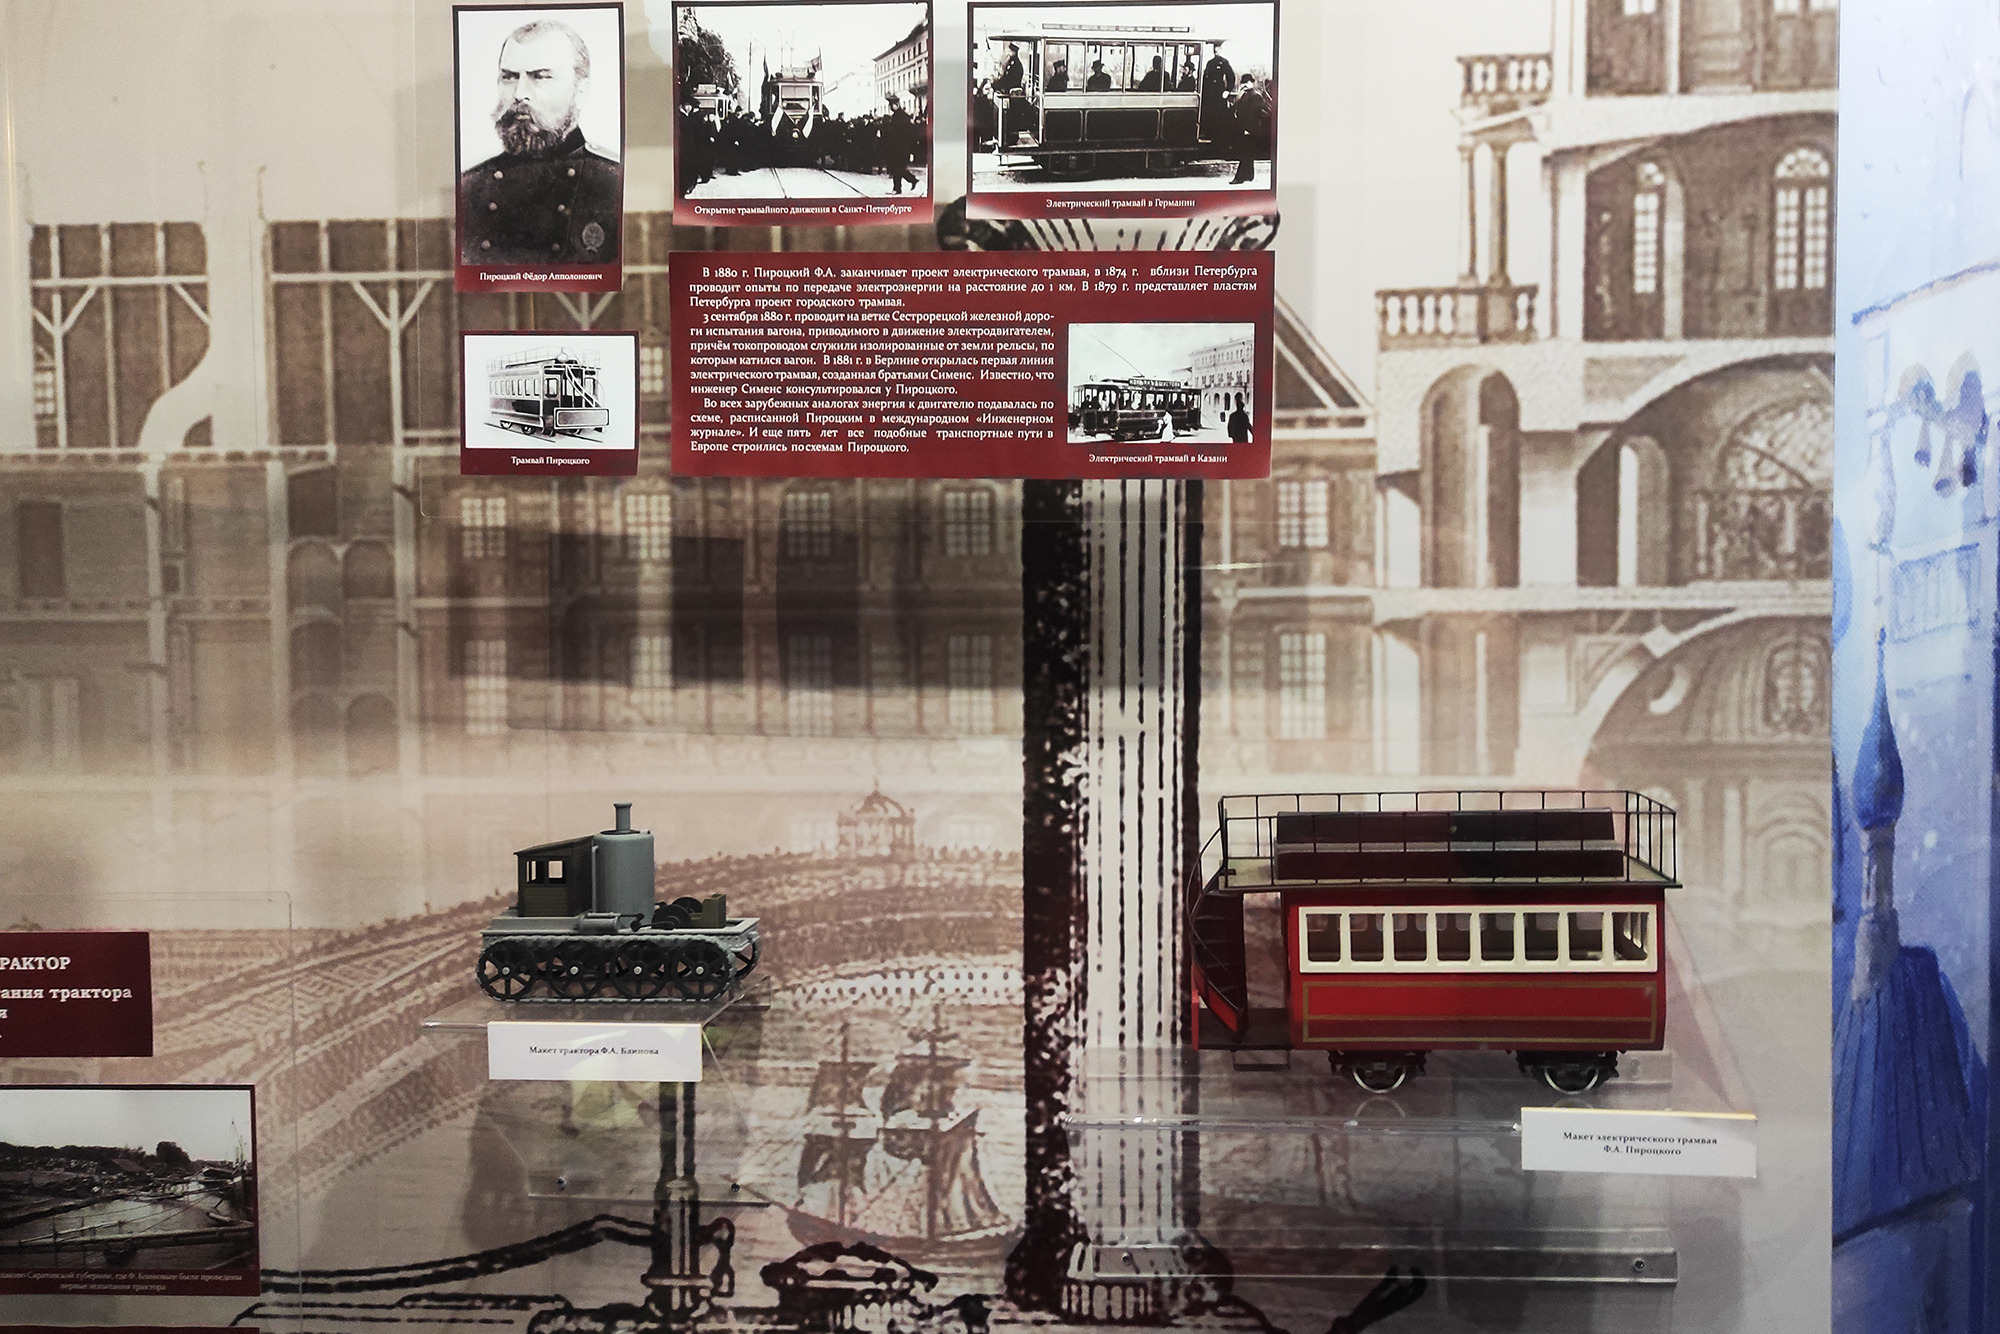 В 1880 году Федор Пироцкий изобрел электрический трамвай. Но поскольку он был изобретателем-одиночкой, а у Вернера фон Сименса была своя компания, немец успел запатентовать свою инновацию первым